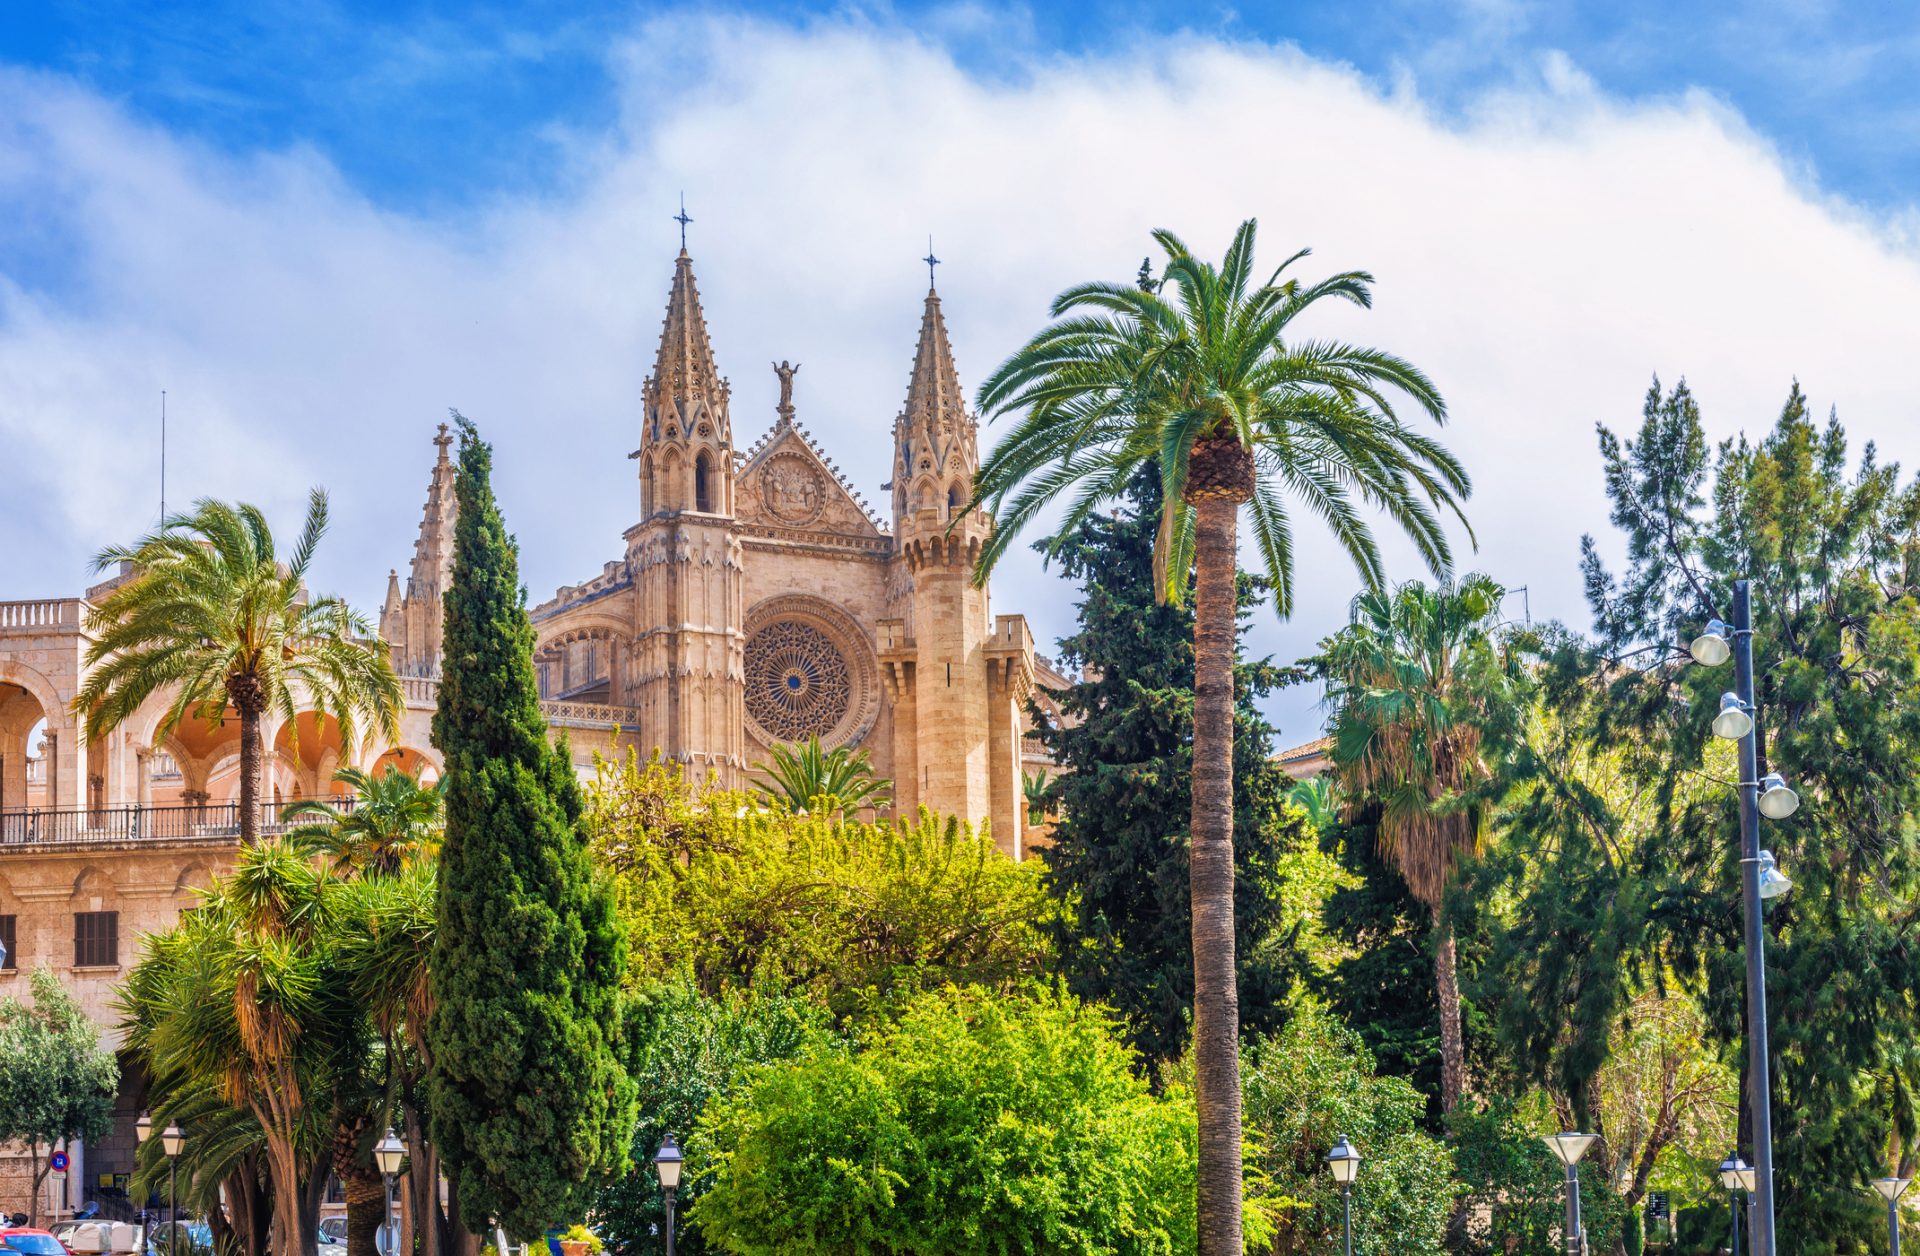 La Seu, die Kathedrale von Palma de Mallorca